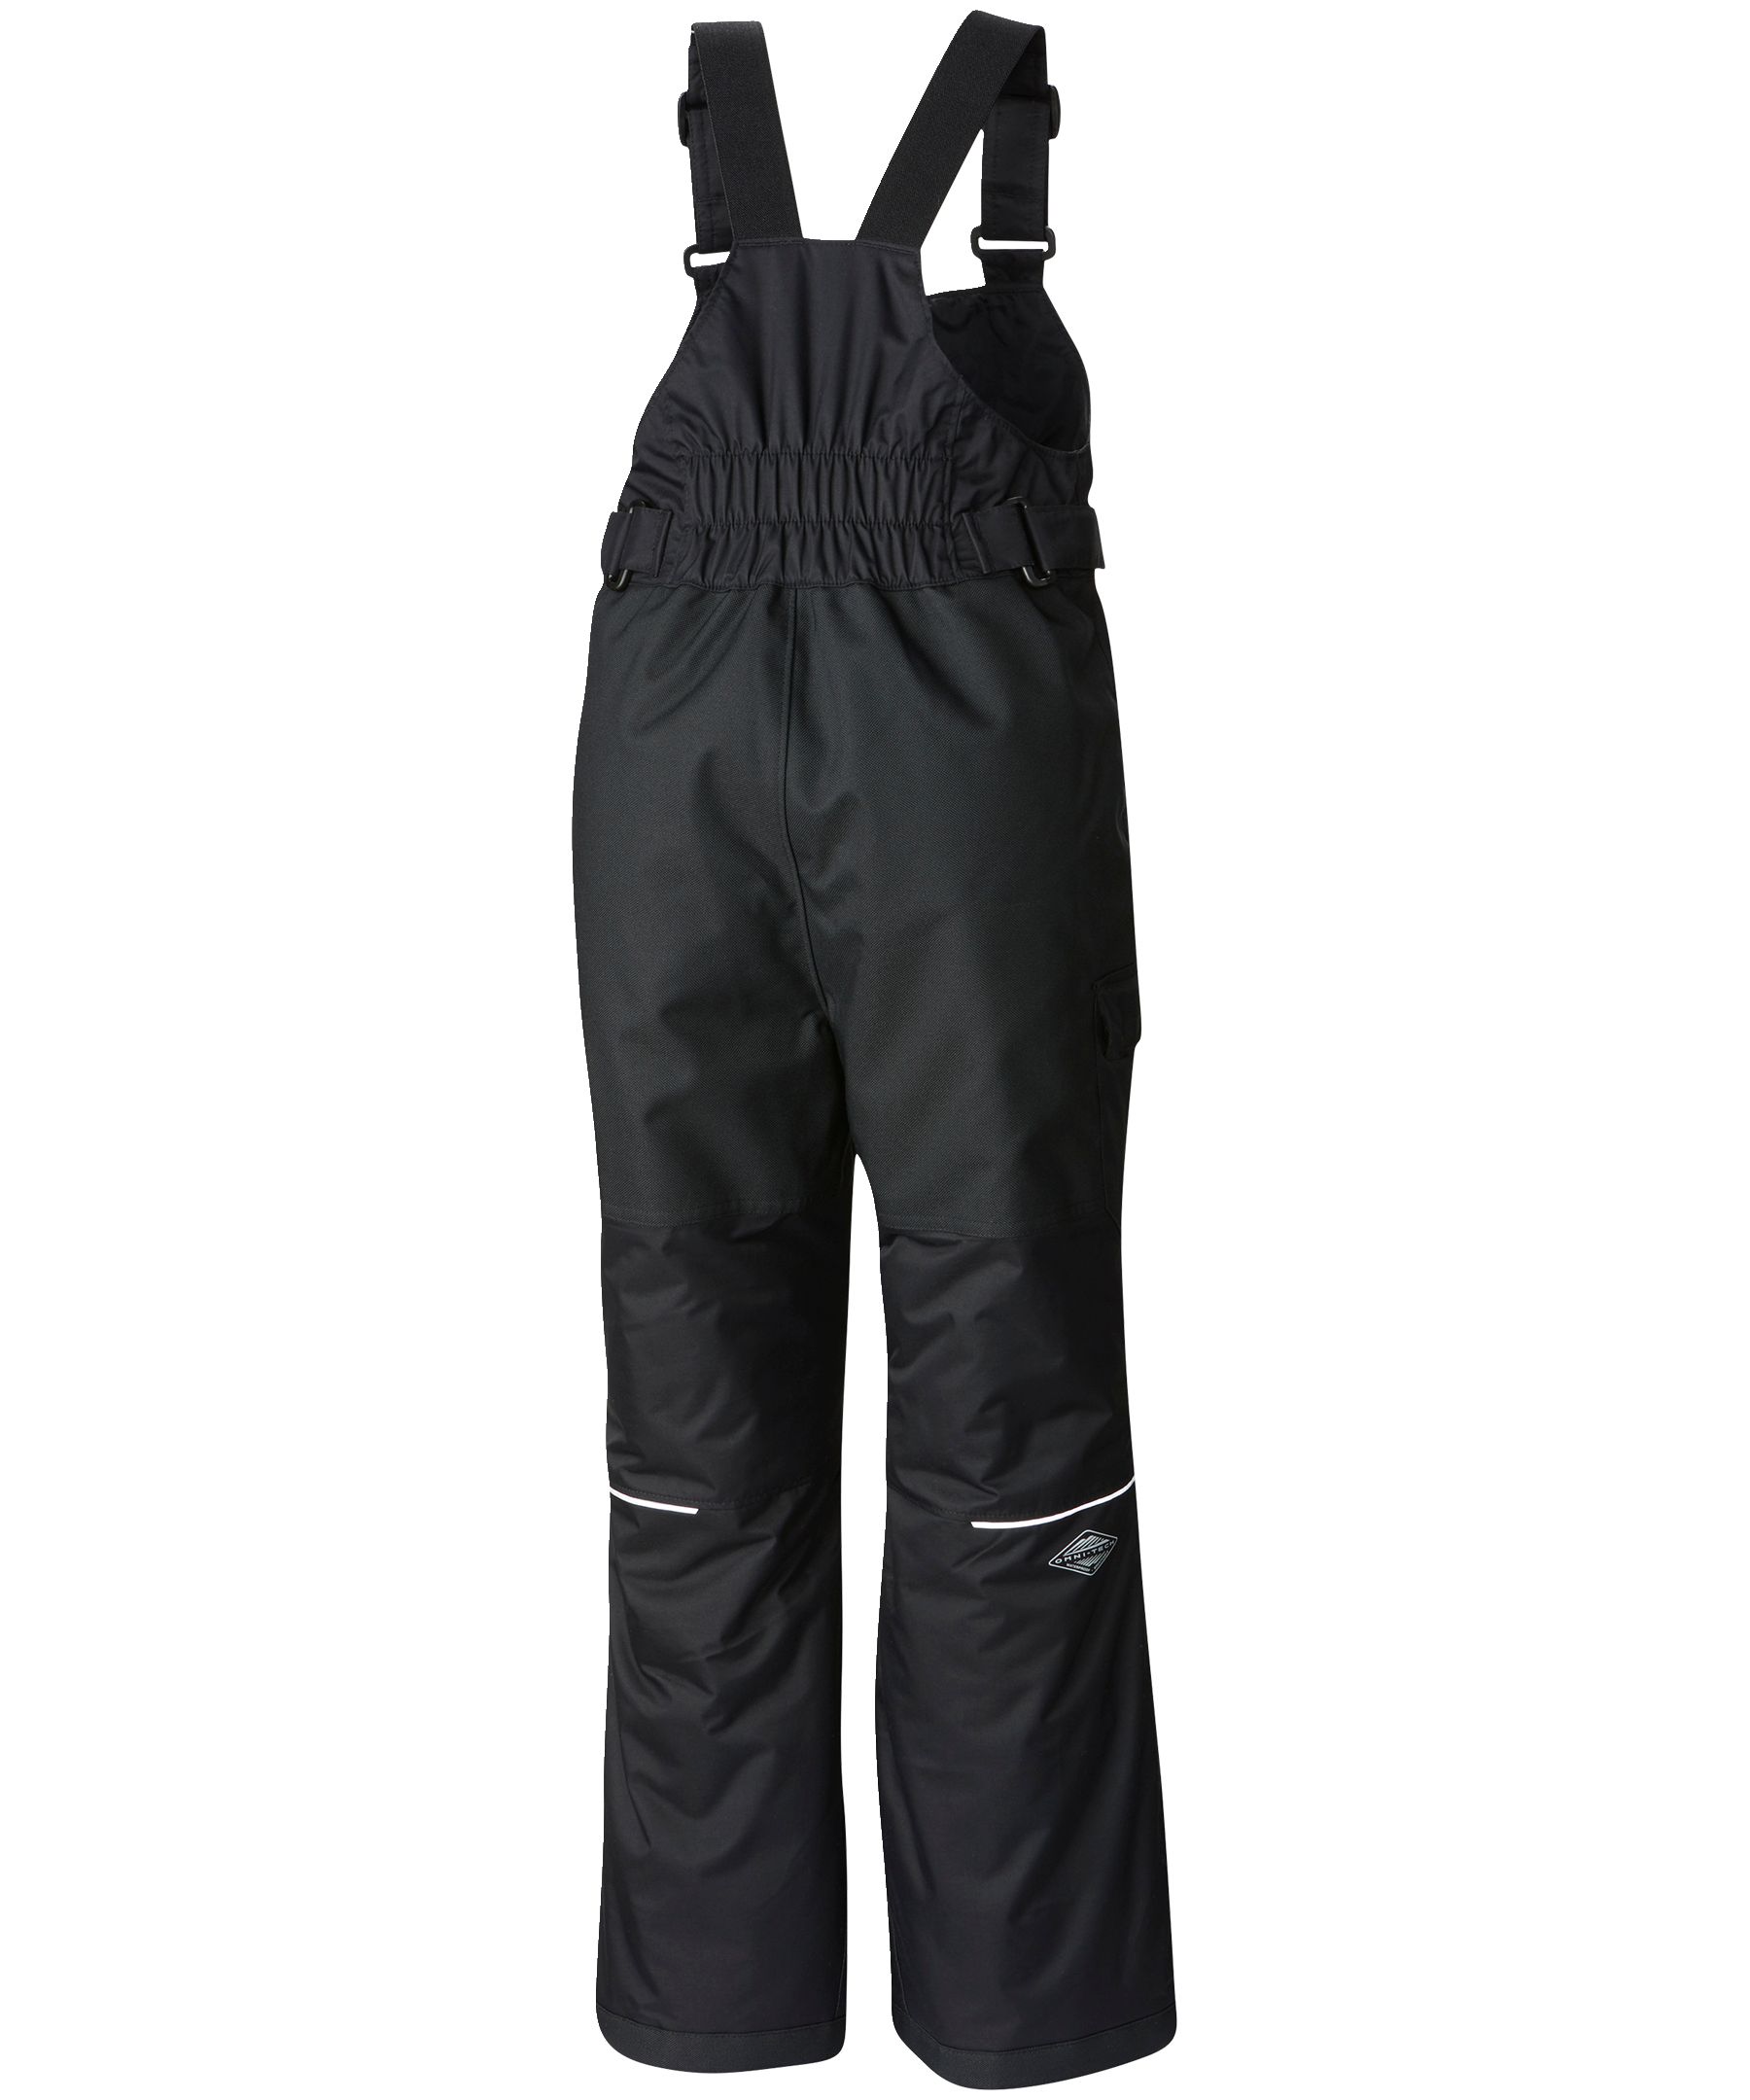 Men's Powder Stash™ Ski Pants - Big | Columbia Sportswear